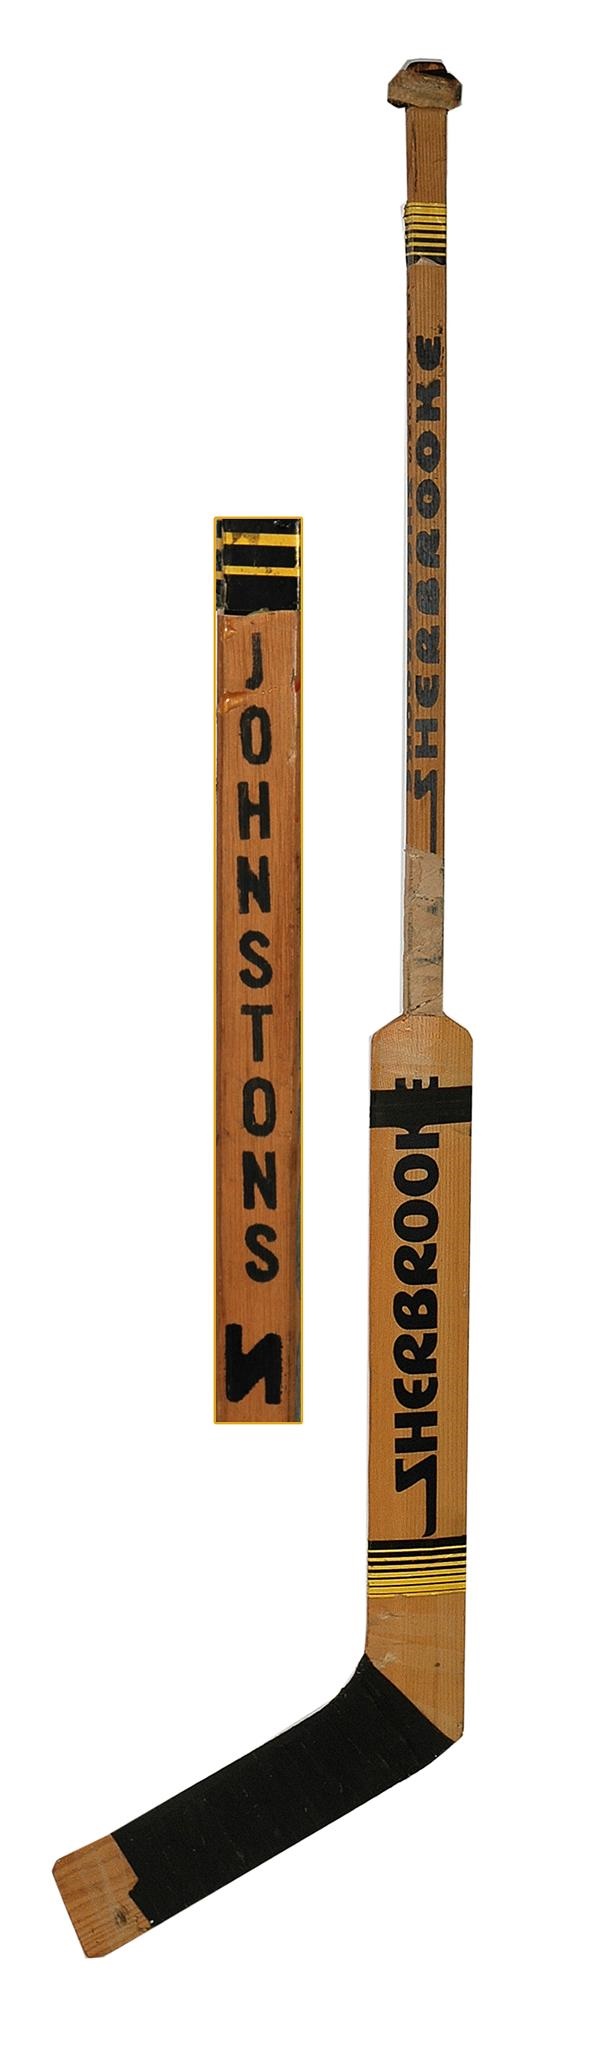 Eddie Johnston Game Used Stick